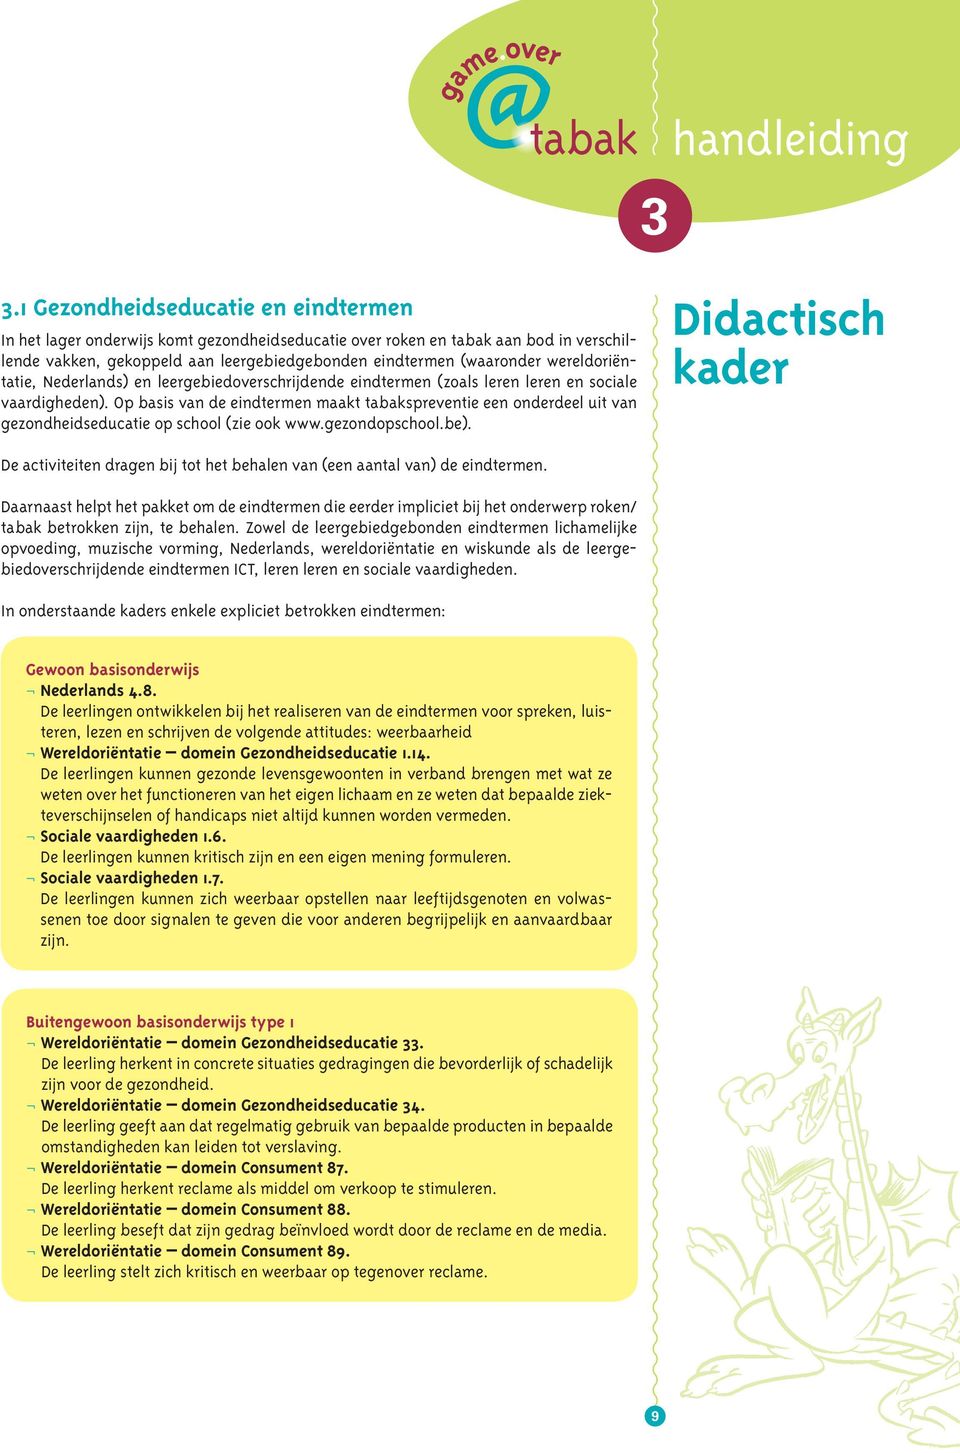 wereldoriëntatie, Nederlands) en leergebiedoverschrijdende eindtermen (zoals leren leren en sociale vaardigheden).